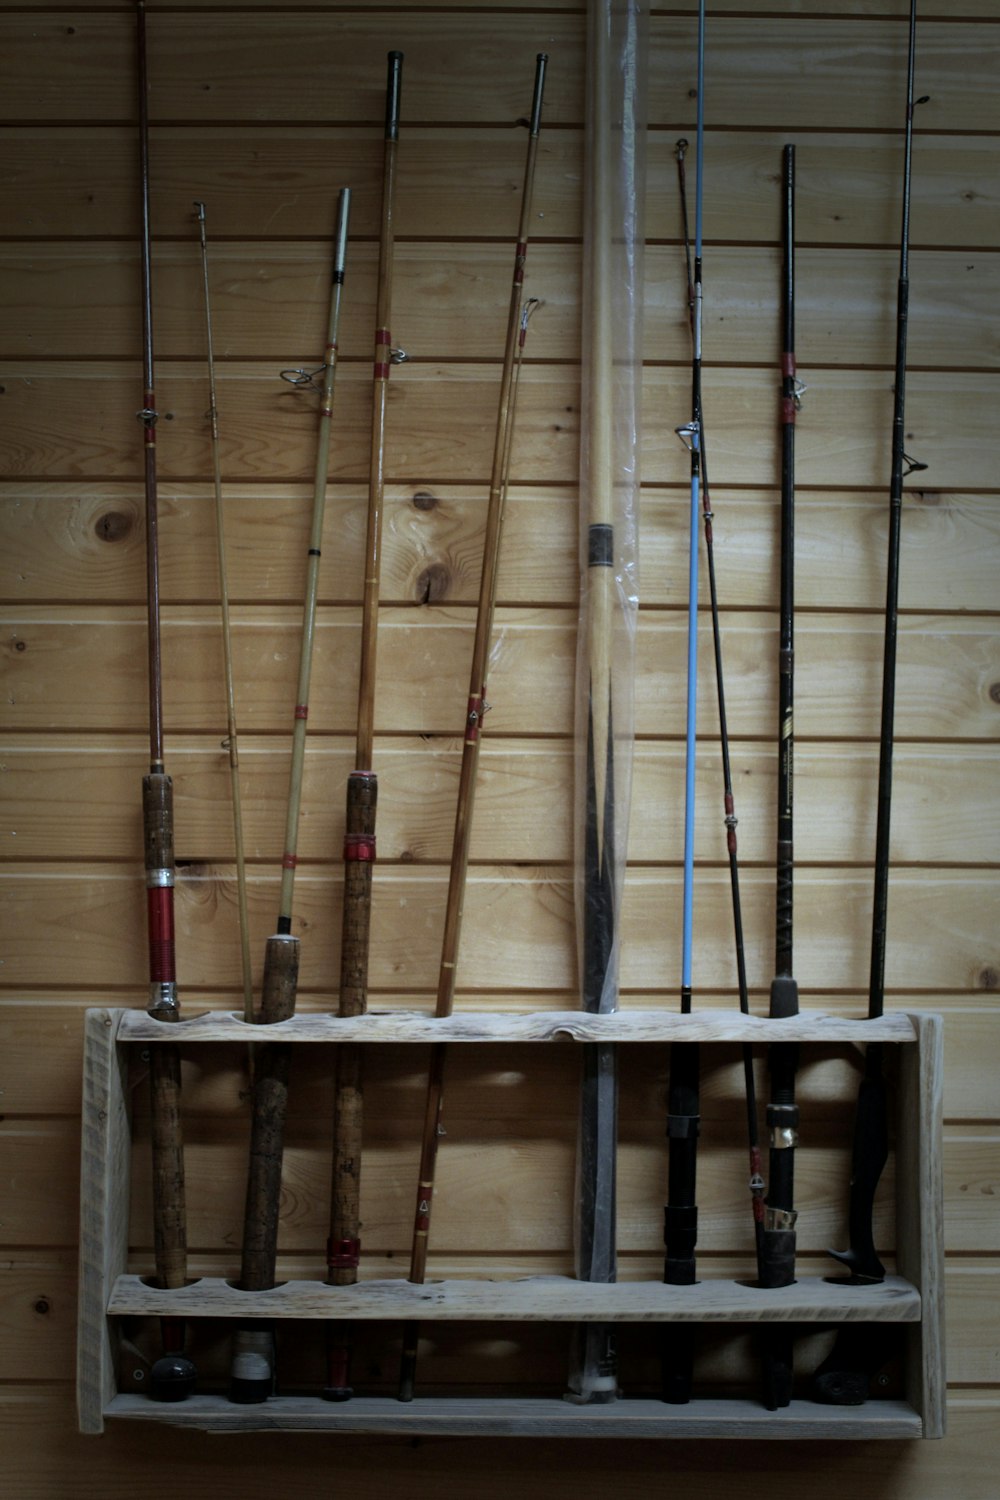 Fishing rod lot photo – Free Wood Image on Unsplash